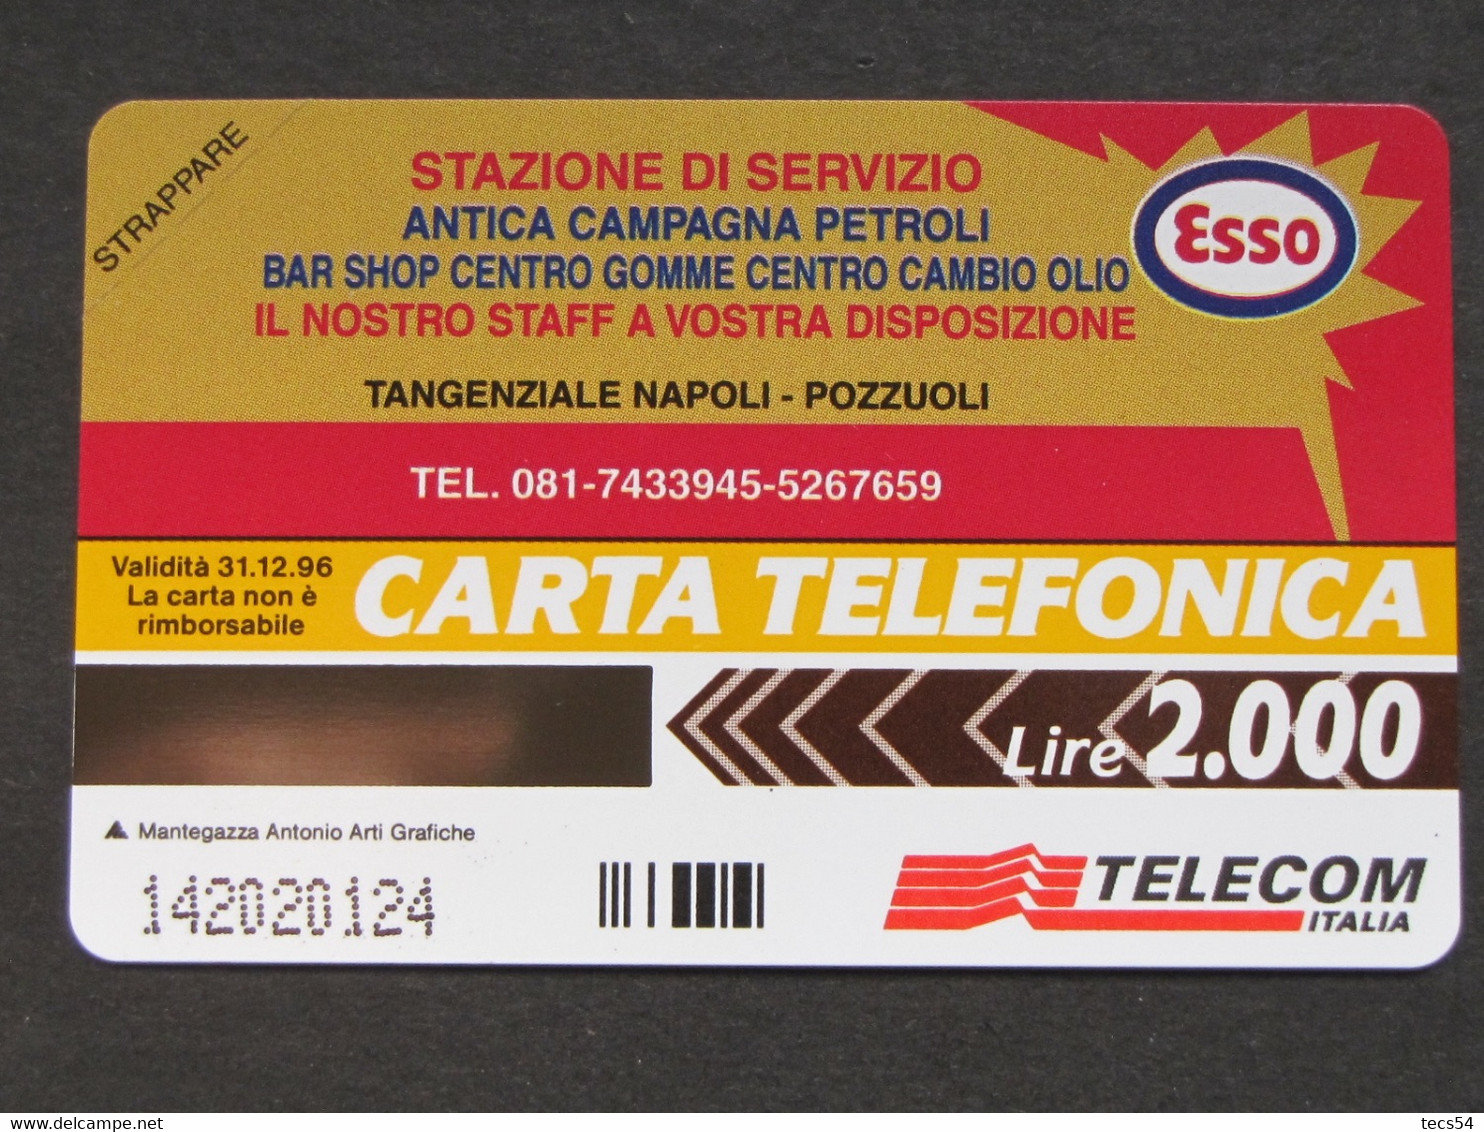 ITALIA TELECOM - 3332 C&C 239 GOLDEN - PRIVATE PUBBLICHE - ESSO ANTICA CAMPAGNA - NUOVA - Private-Omaggi